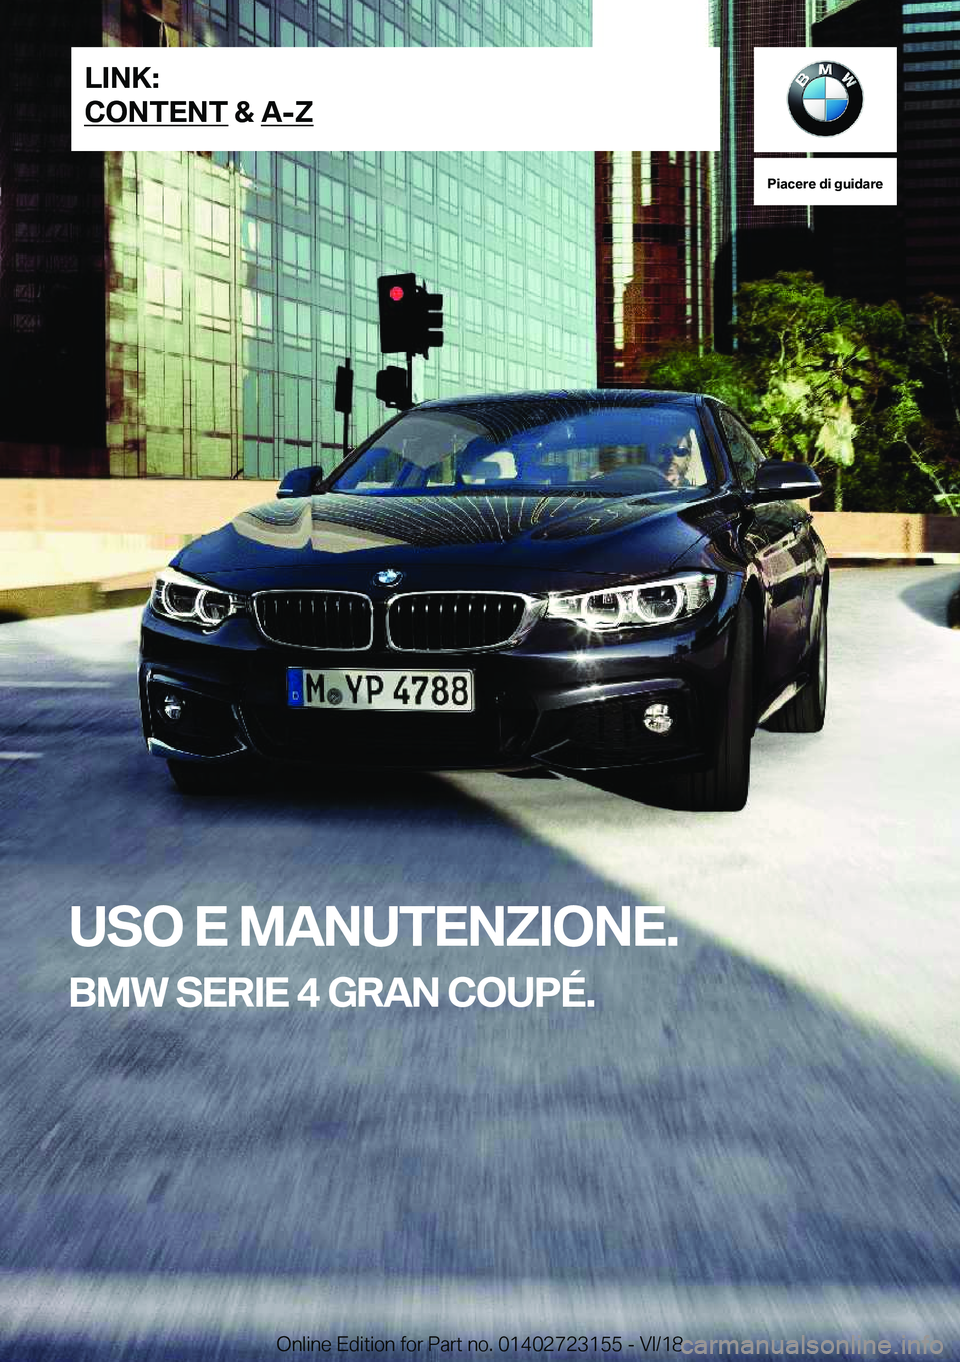 BMW 4 SERIES GRAN COUPE 2019  Libretti Di Uso E manutenzione (in Italian) �P�i�a�c�e�r�e��d�i��g�u�i�d�a�r�e
�U�S�O��E��M�A�N�U�T�E�N�;�I�O�N�E�.
�B�M�W��S�E�R�I�E��4��G�R�A�N��C�O�U�P�